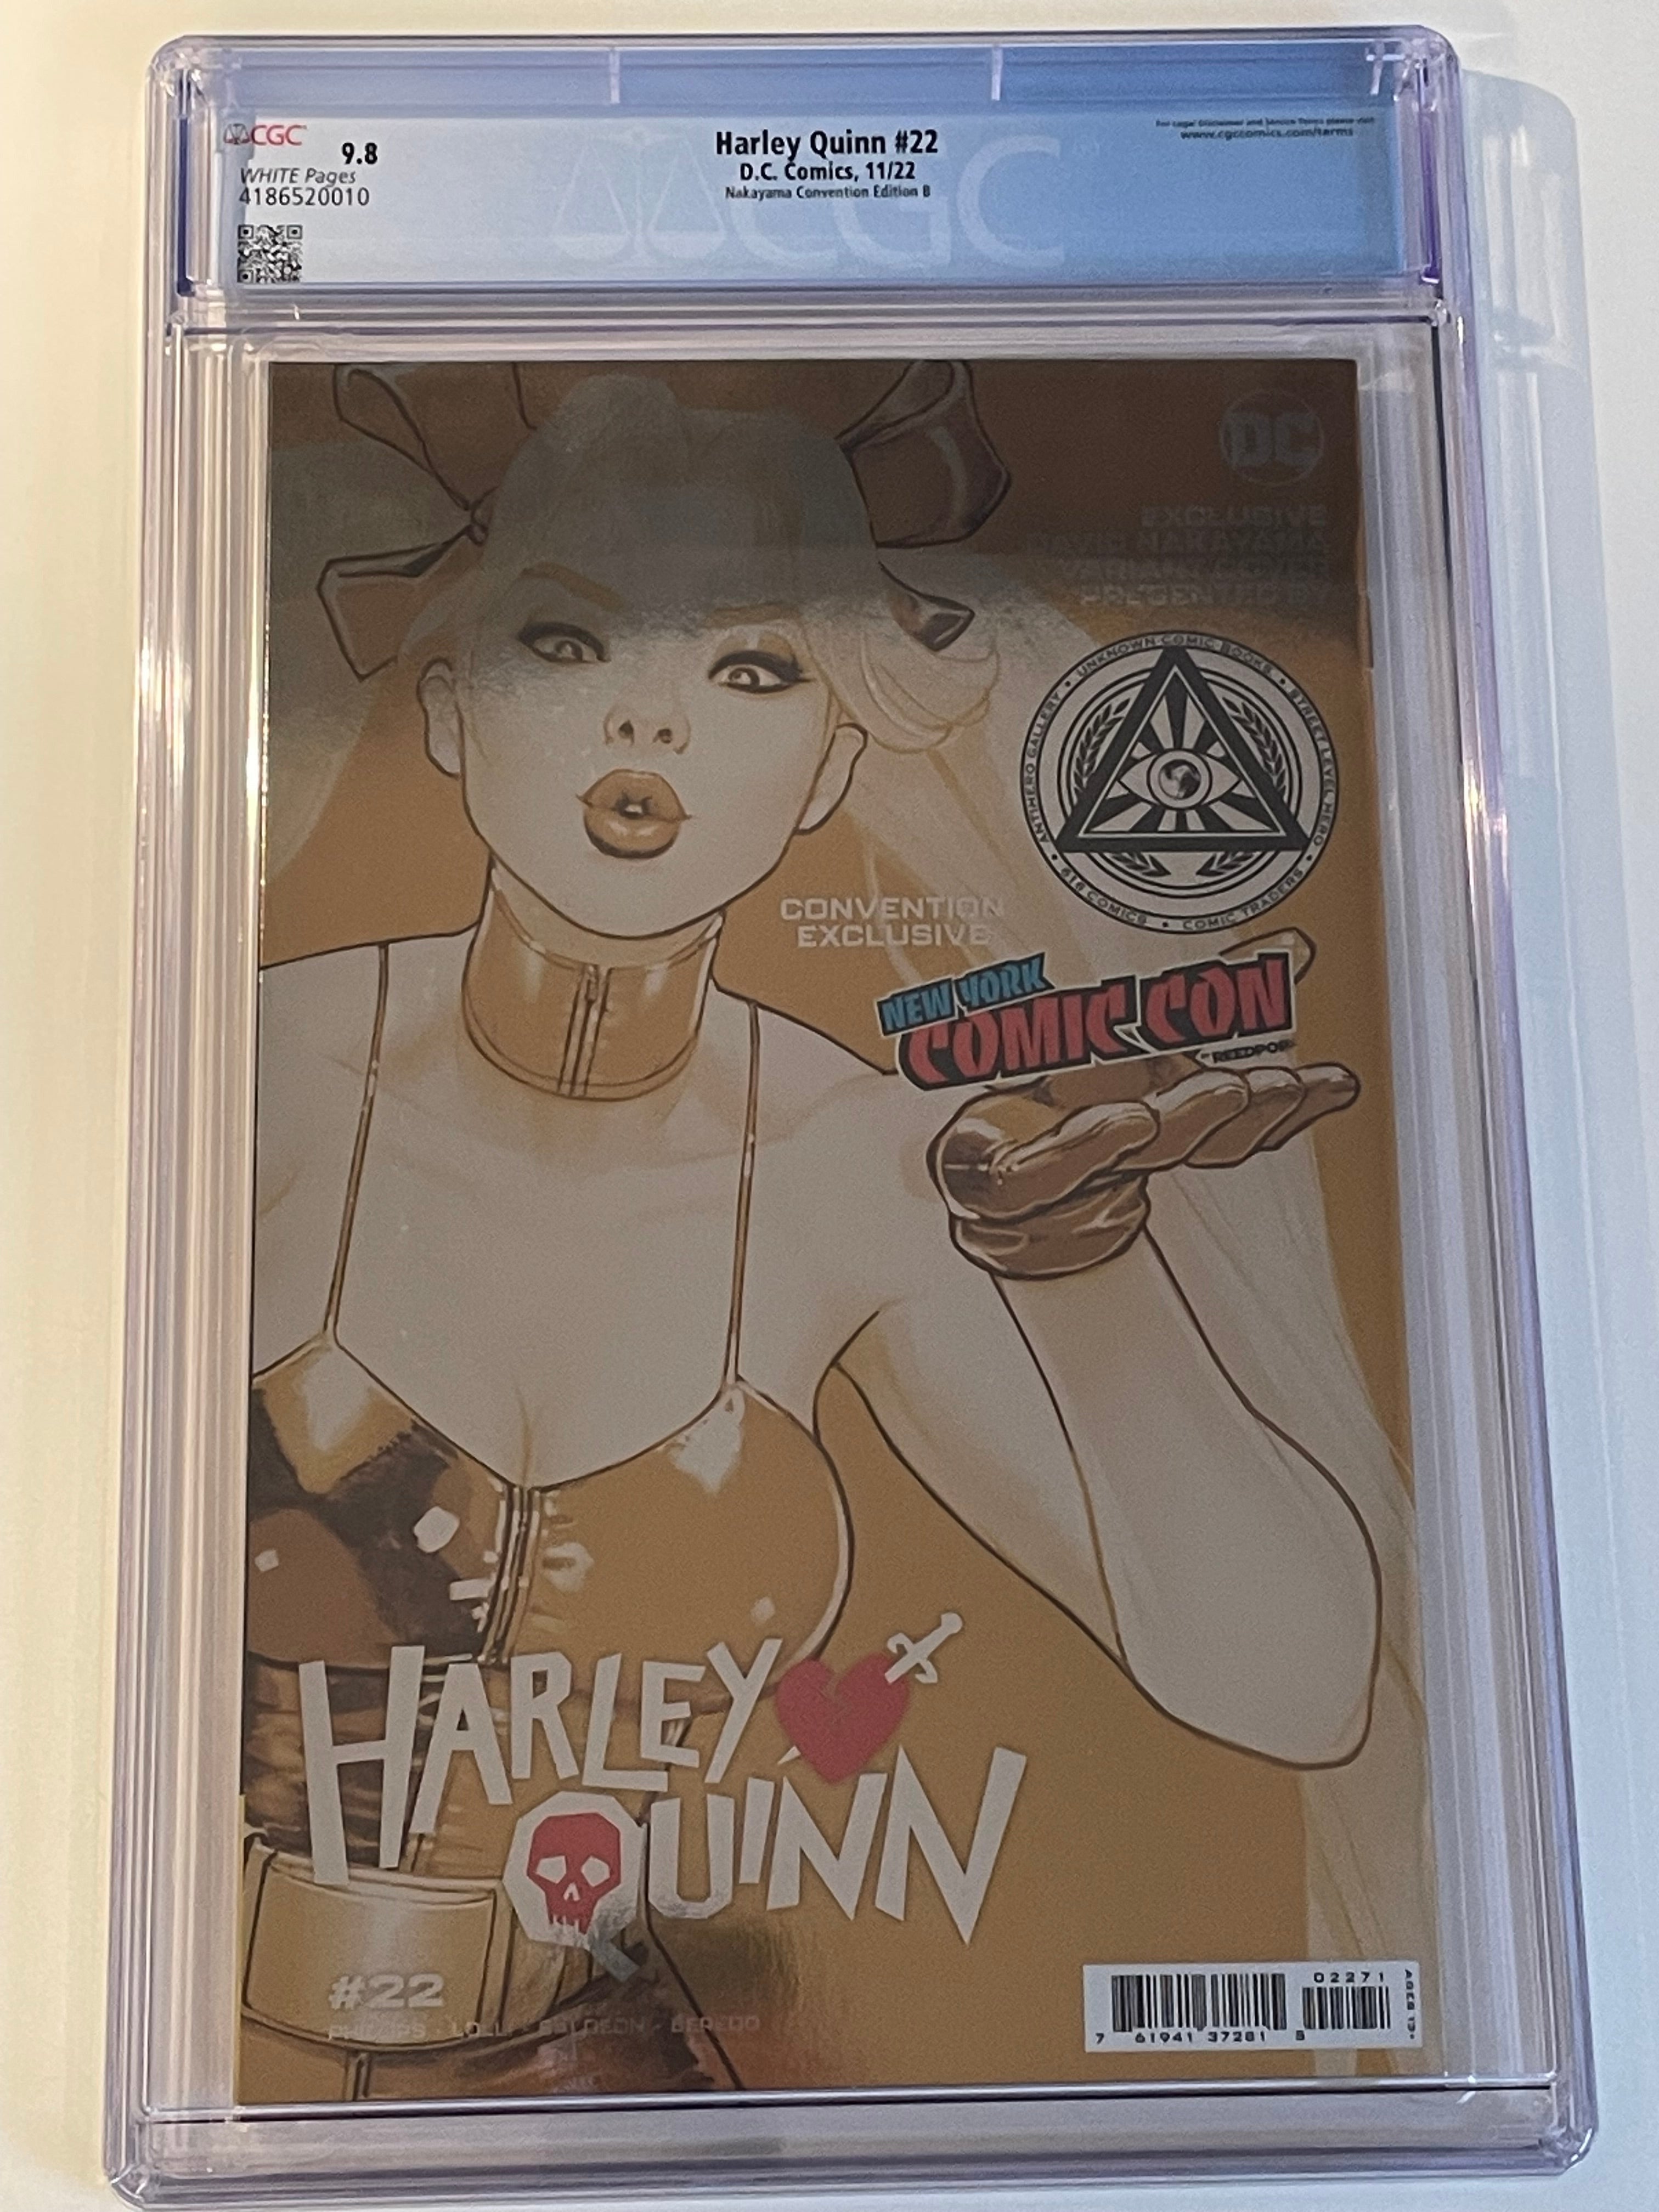 Harley Quinn #22 backside